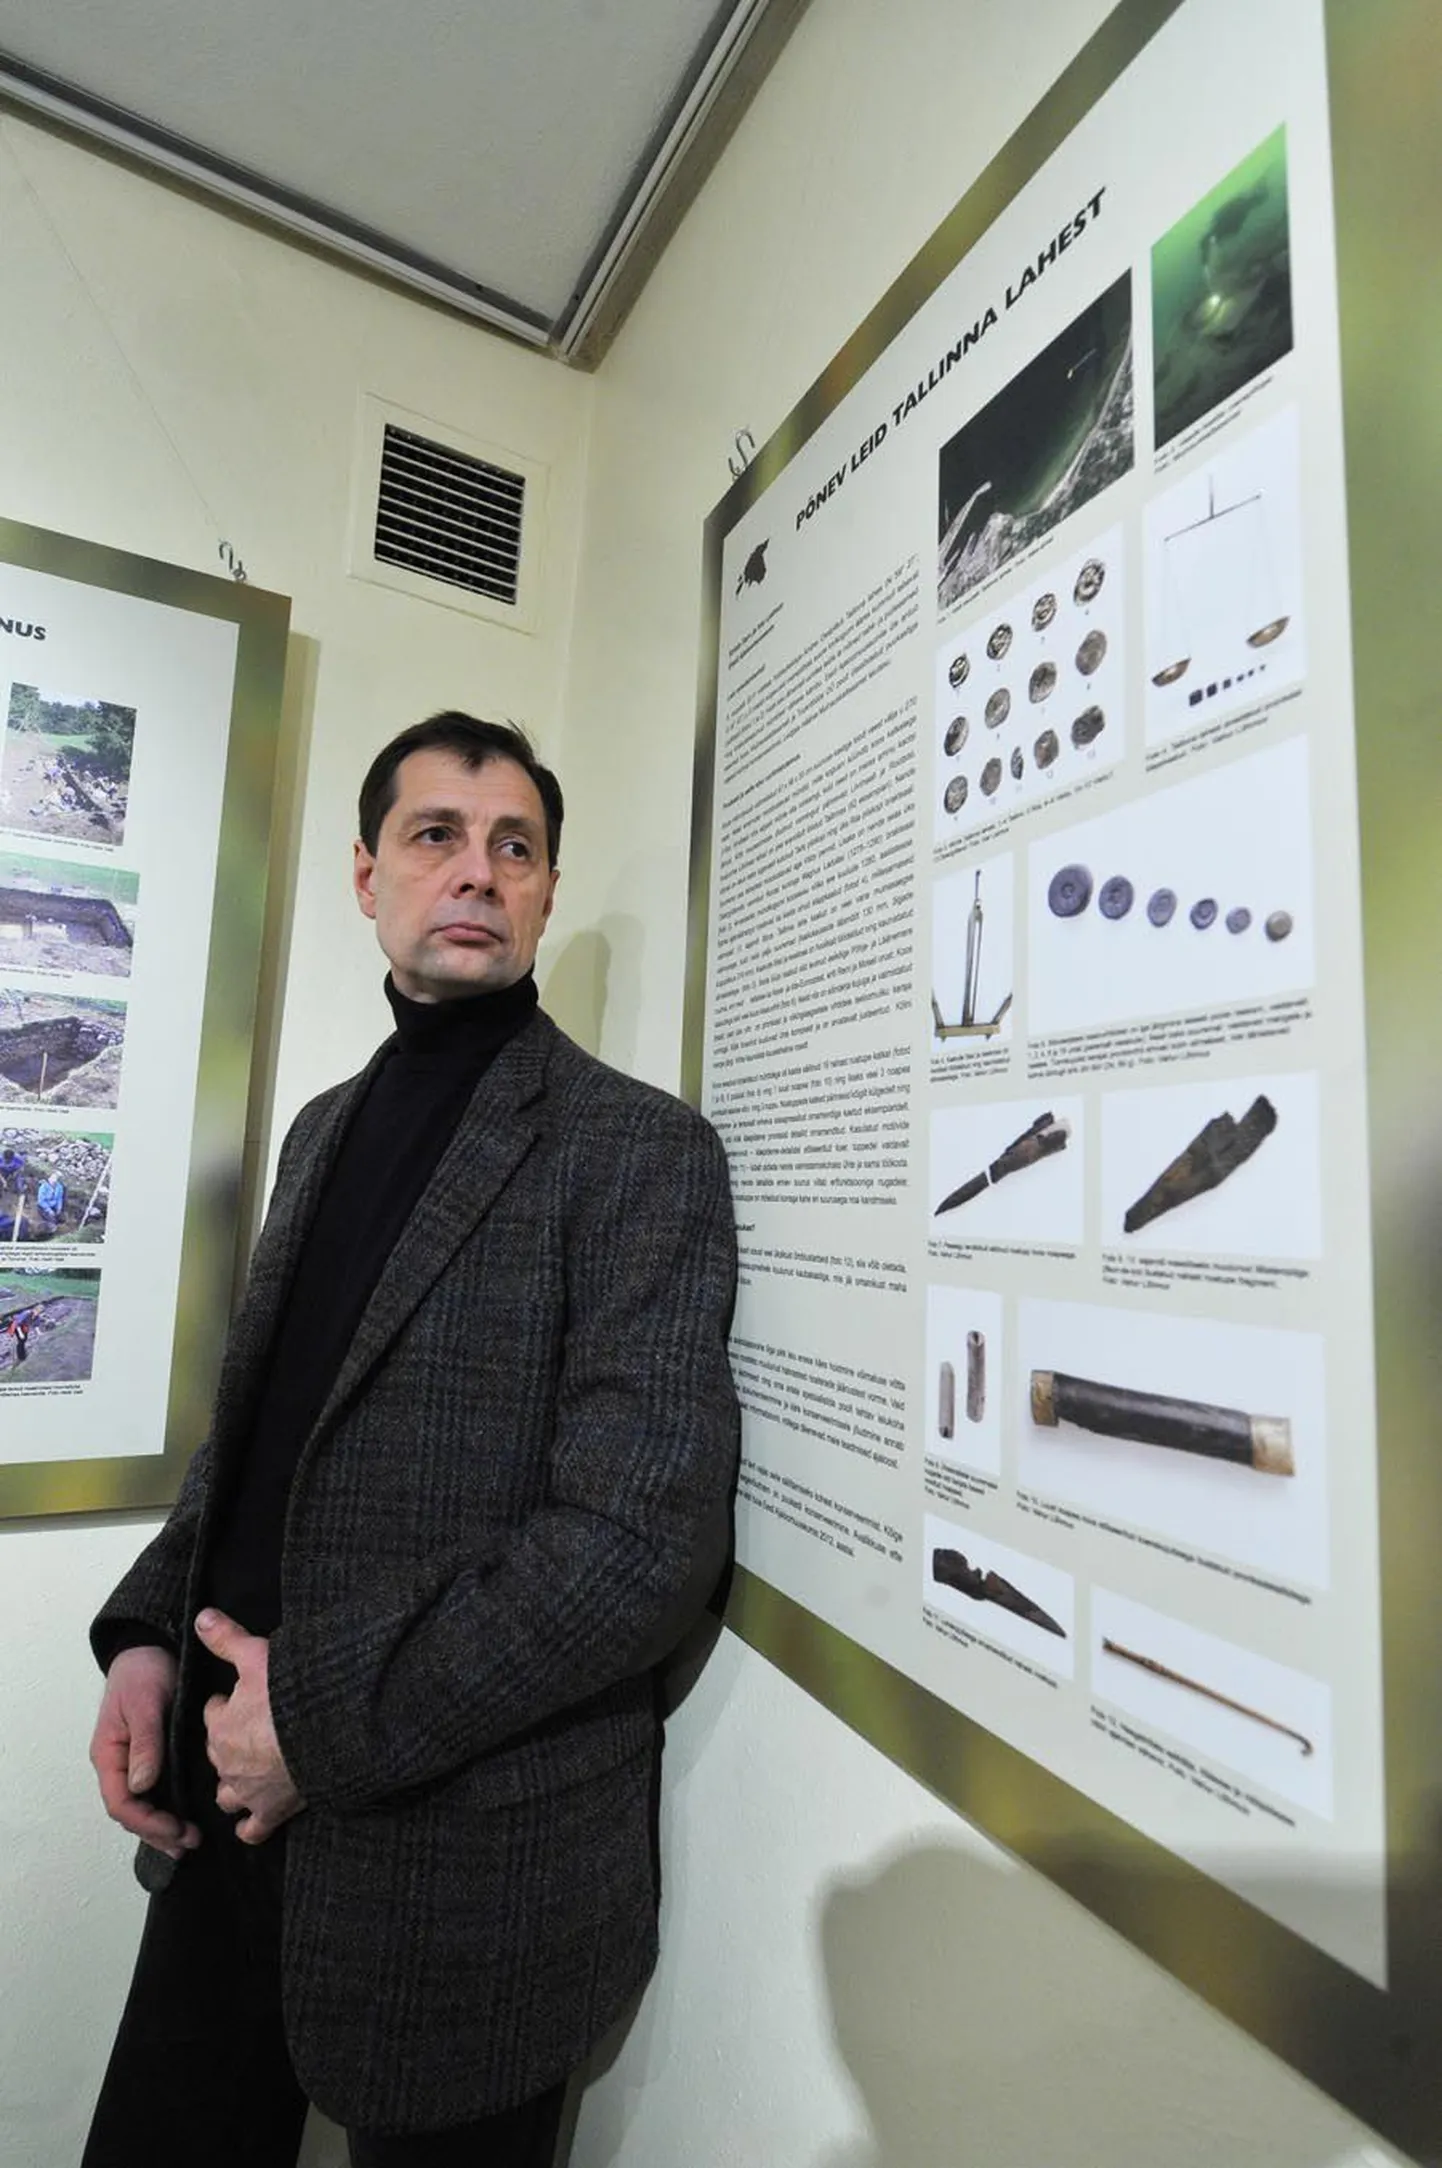 Tallinna lahest 13. sajandi väikekaupmehe varustuse leidnud Andrei Ossiptšuk oma leidu tutvustava stendi ees Tallinna Ülikooli ajaloo instituudis.